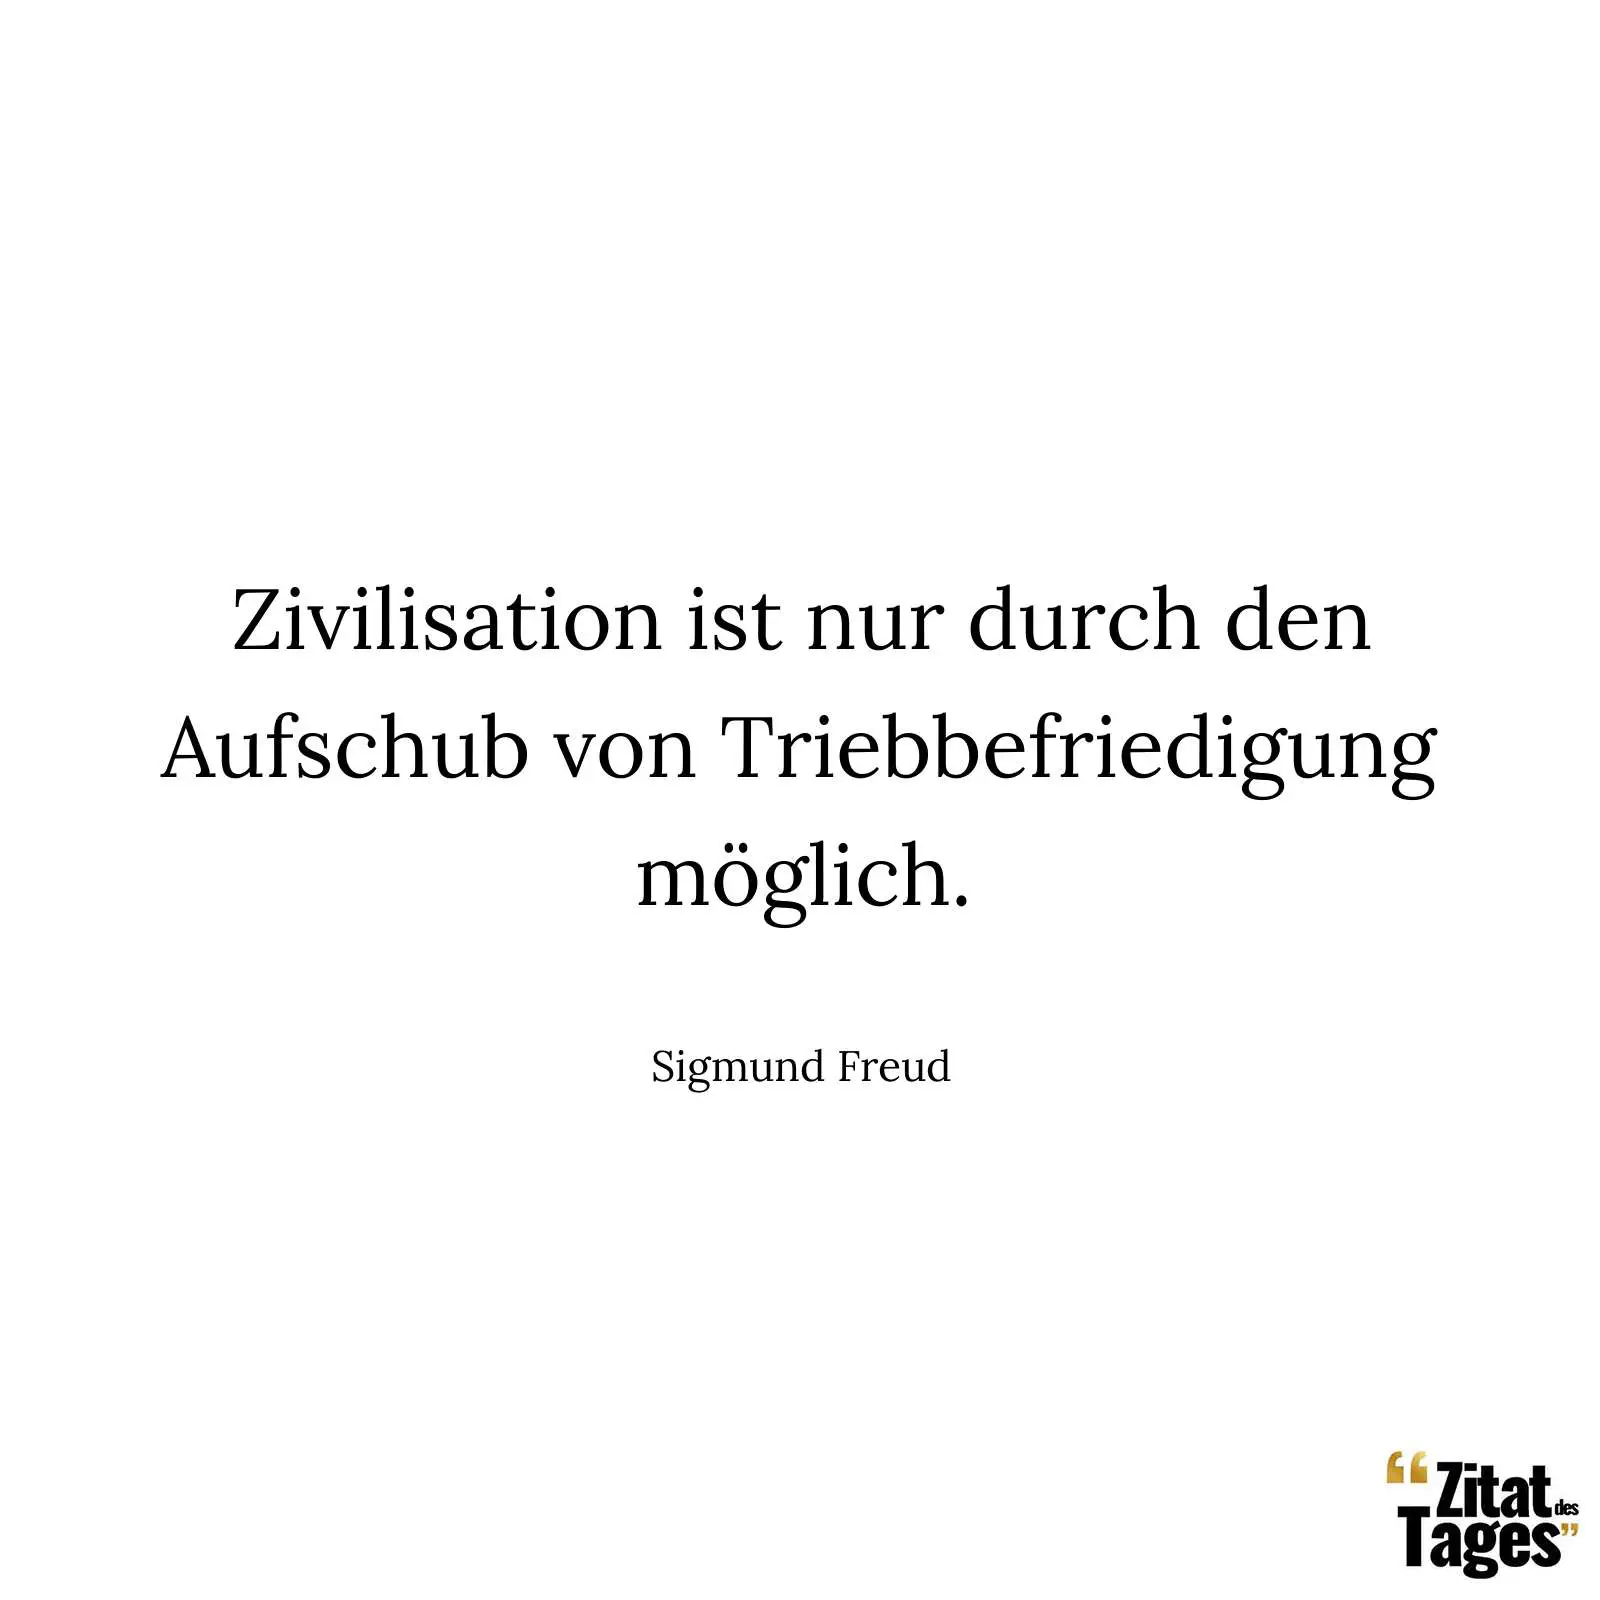 Zivilisation ist nur durch den Aufschub von Triebbefriedigung möglich. - Sigmund Freud